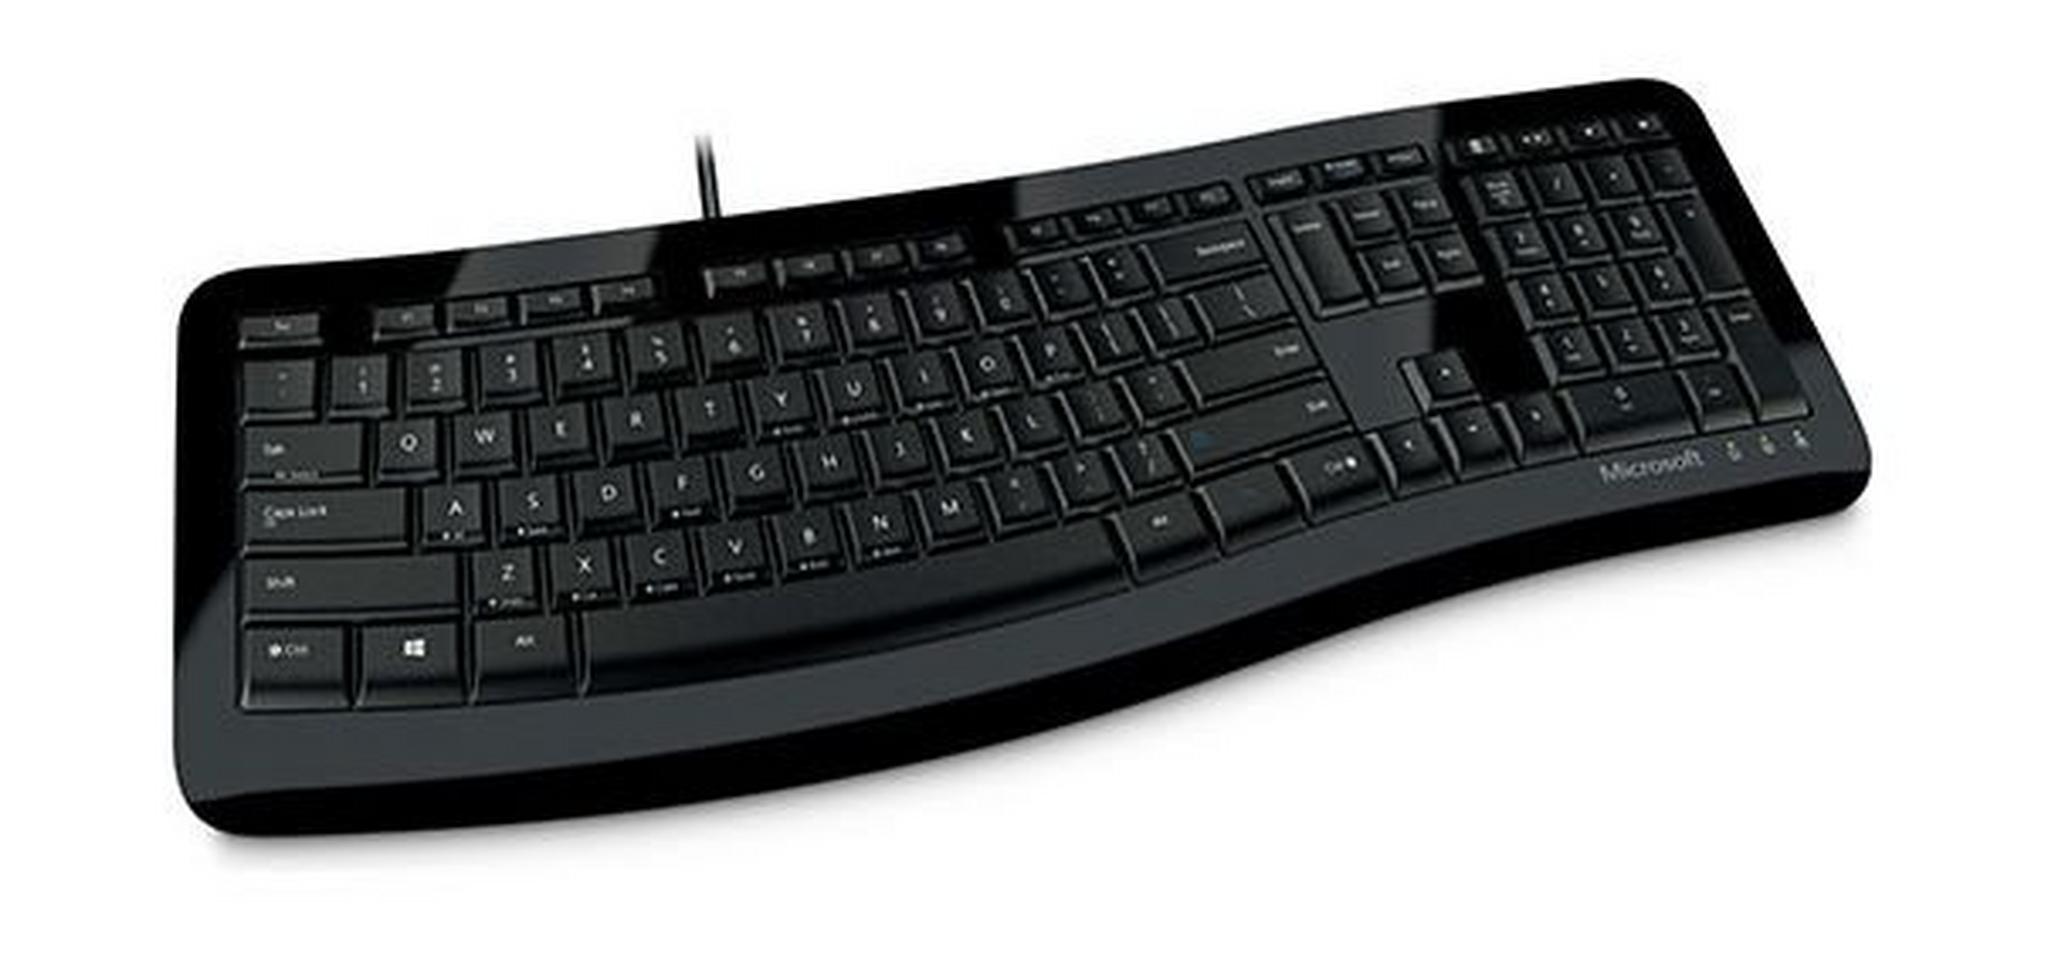 لوحة المفاتيح المنحنية كومفورت من ميكروسوفت - أسود